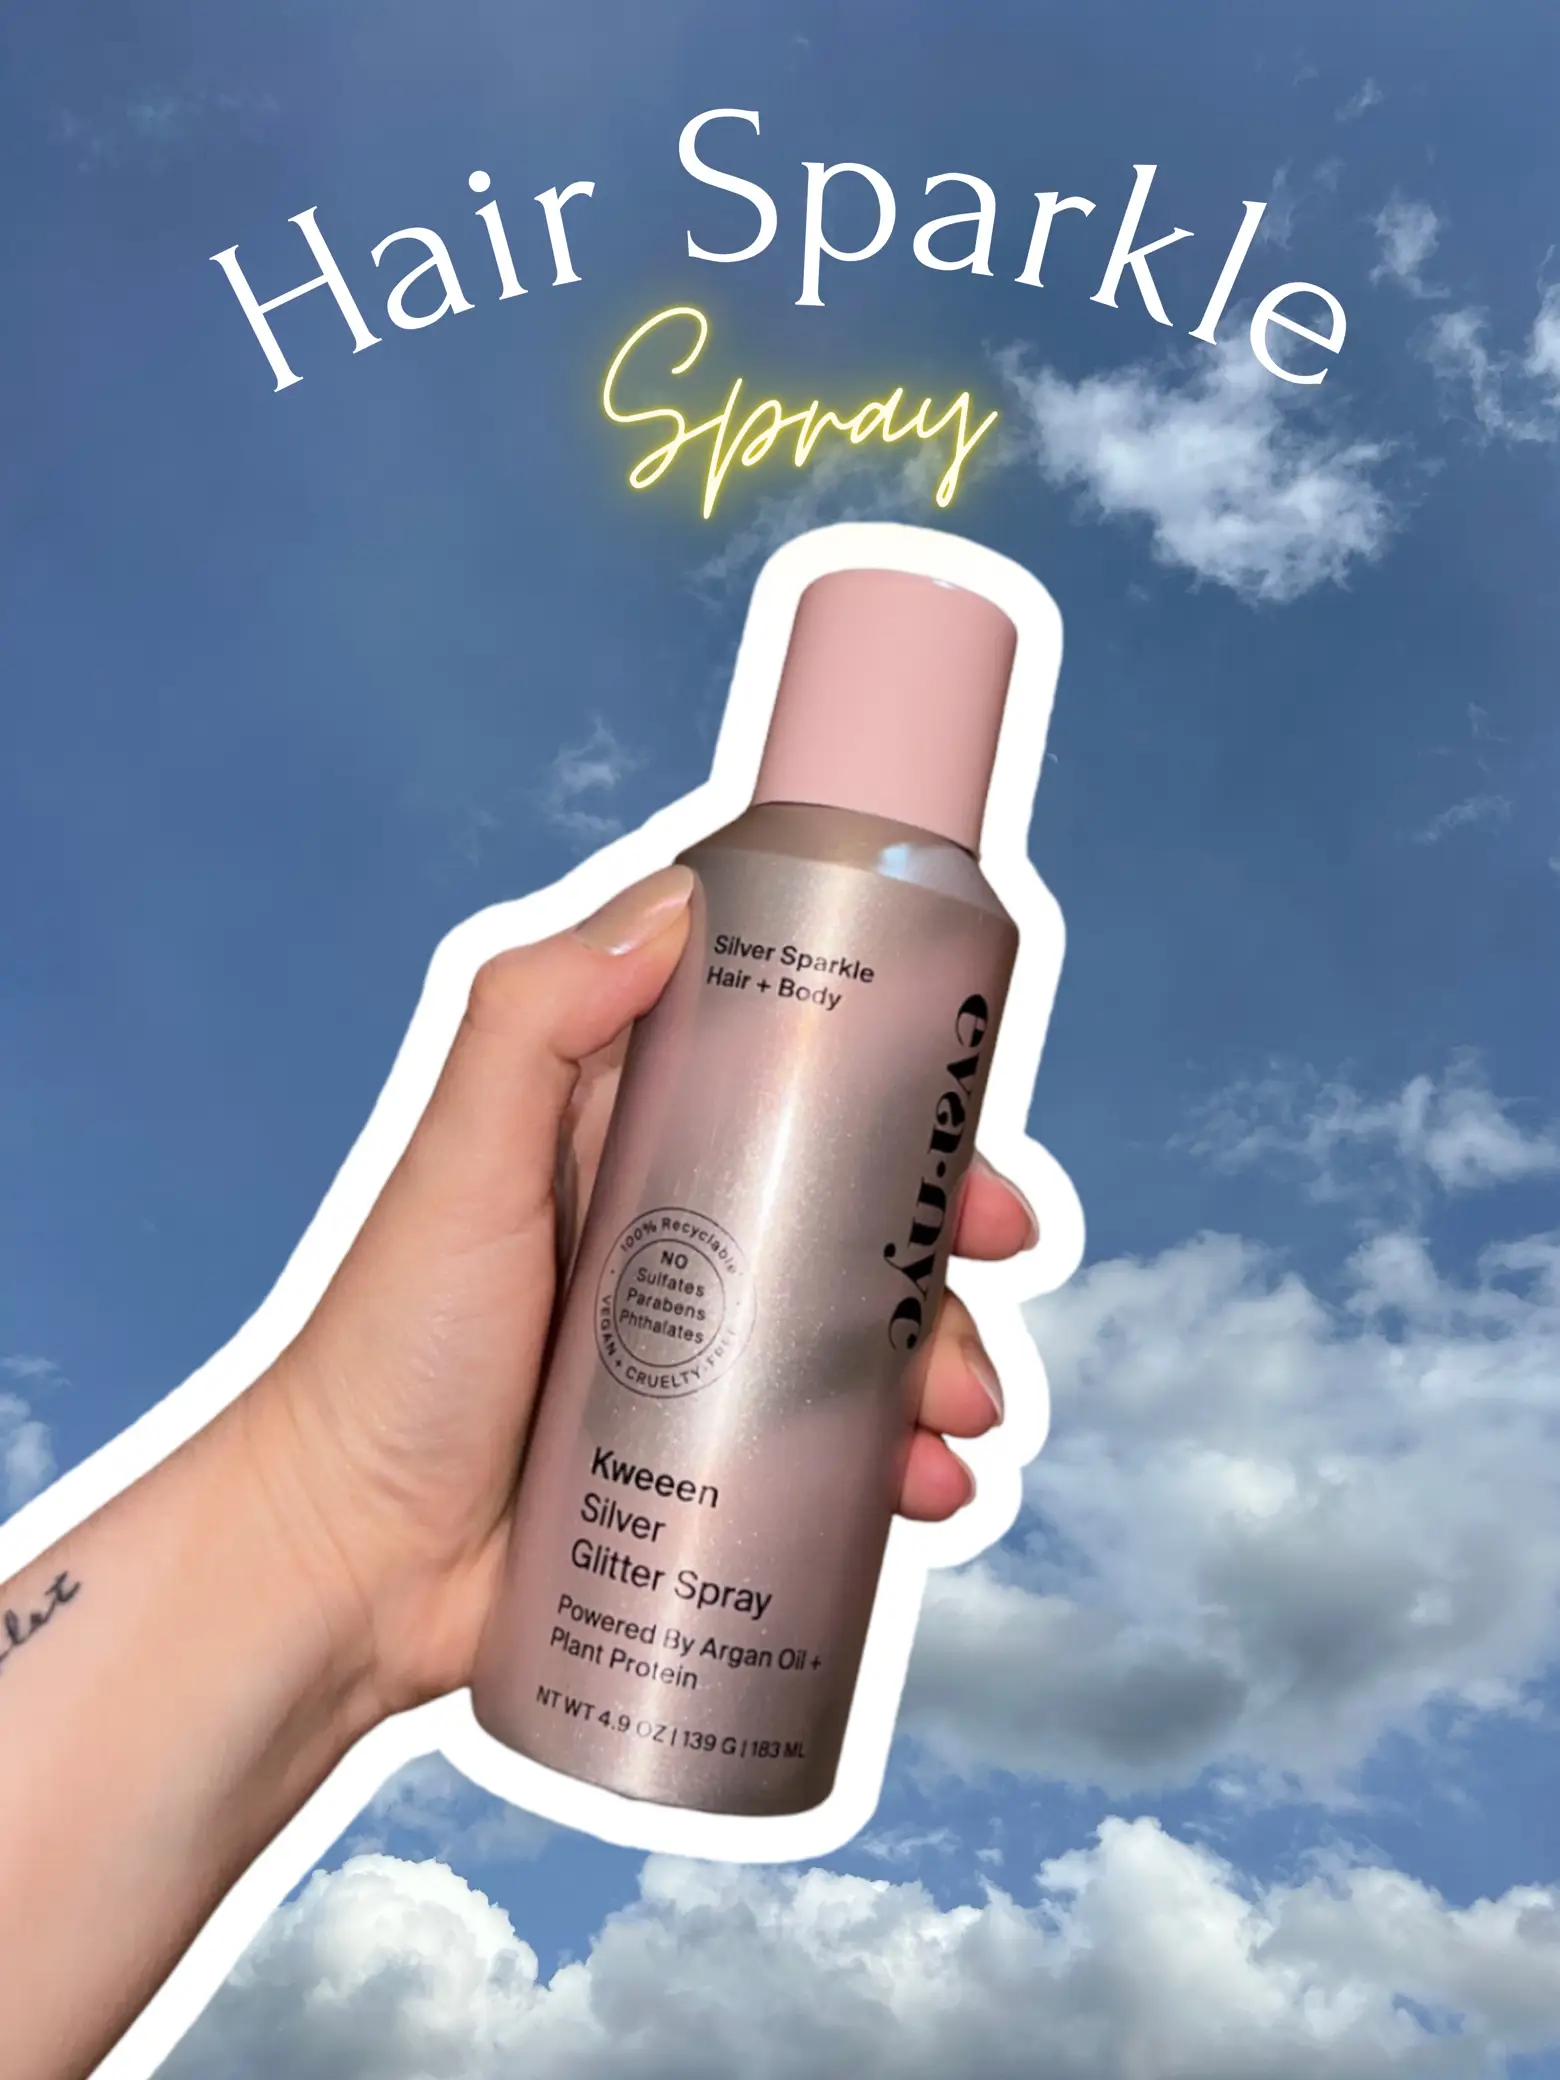 How to use Eva NYC's Glitter Hair Spray